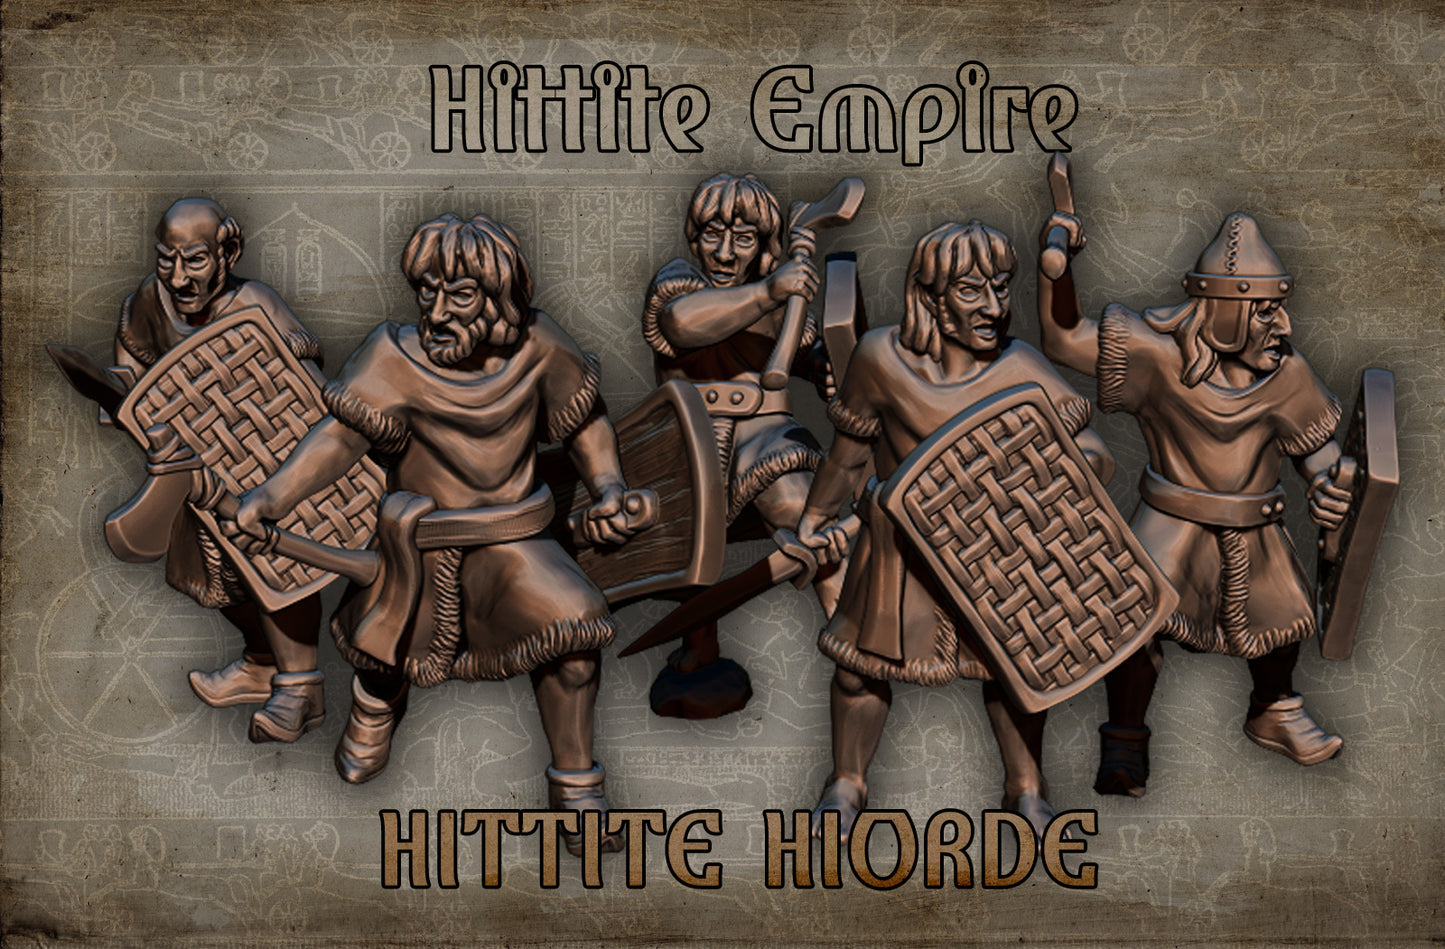 Hittite Horde